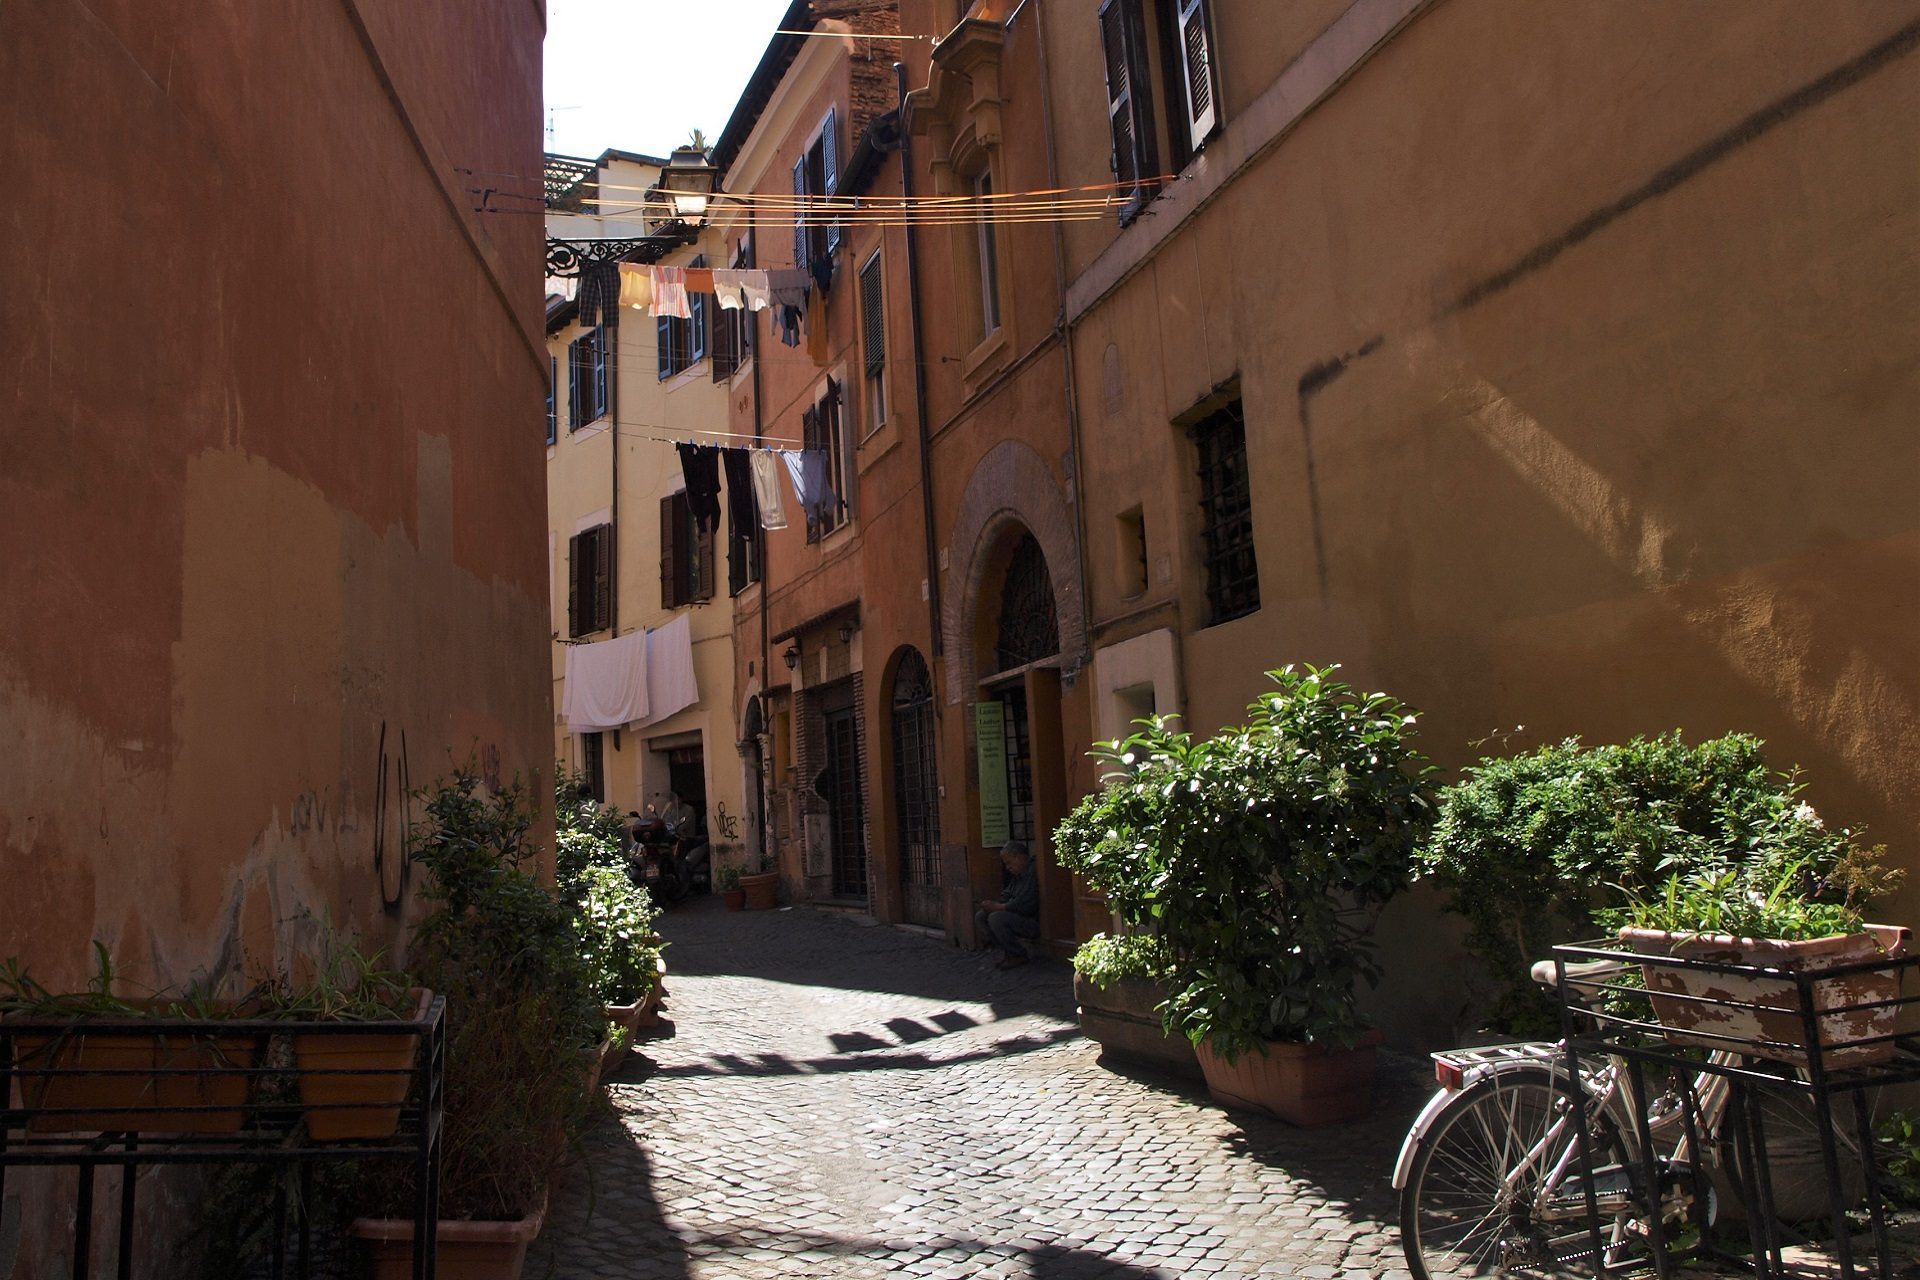 Romantyczny zakątek Zatybrza i tradycyjnie włoski widok powiewającego między budynkami prania